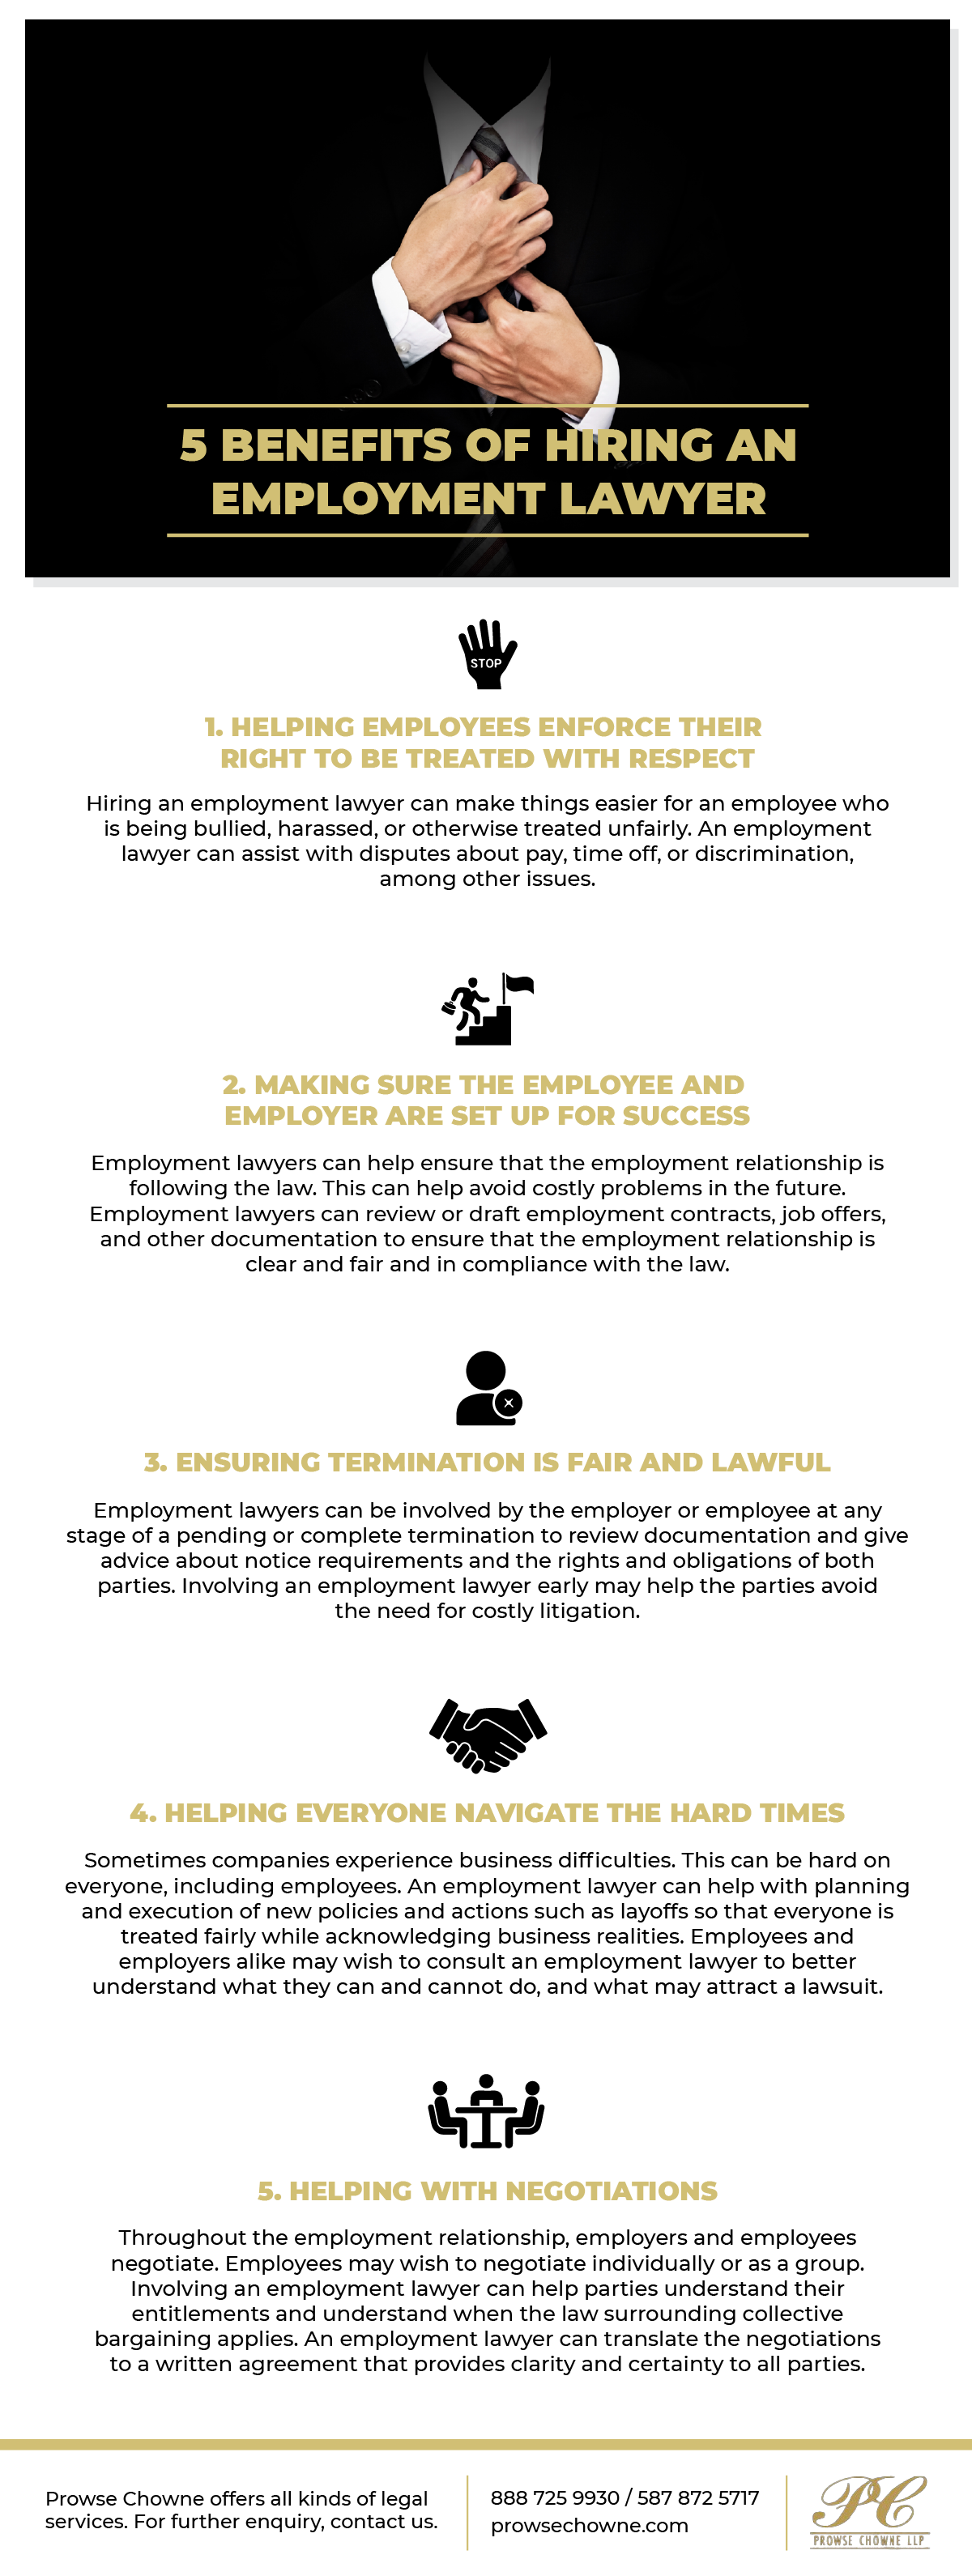 Benefits of Hiring an Employment Lawyer